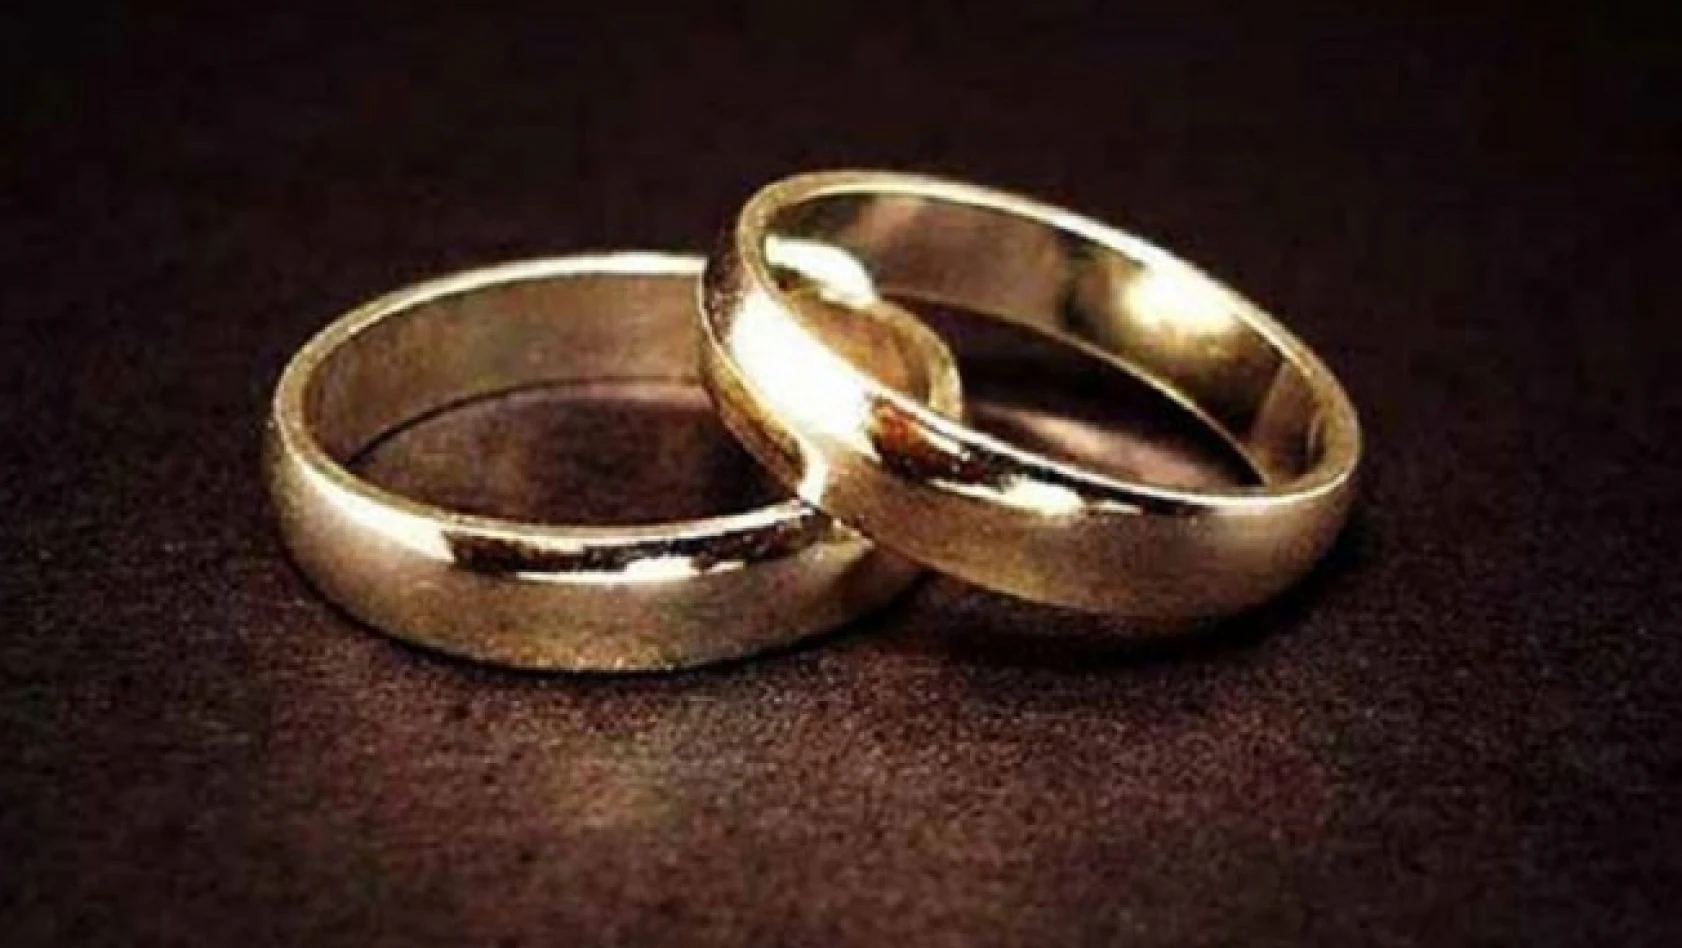 Evlenen çiftlerin sayısı 2017'de azaldı